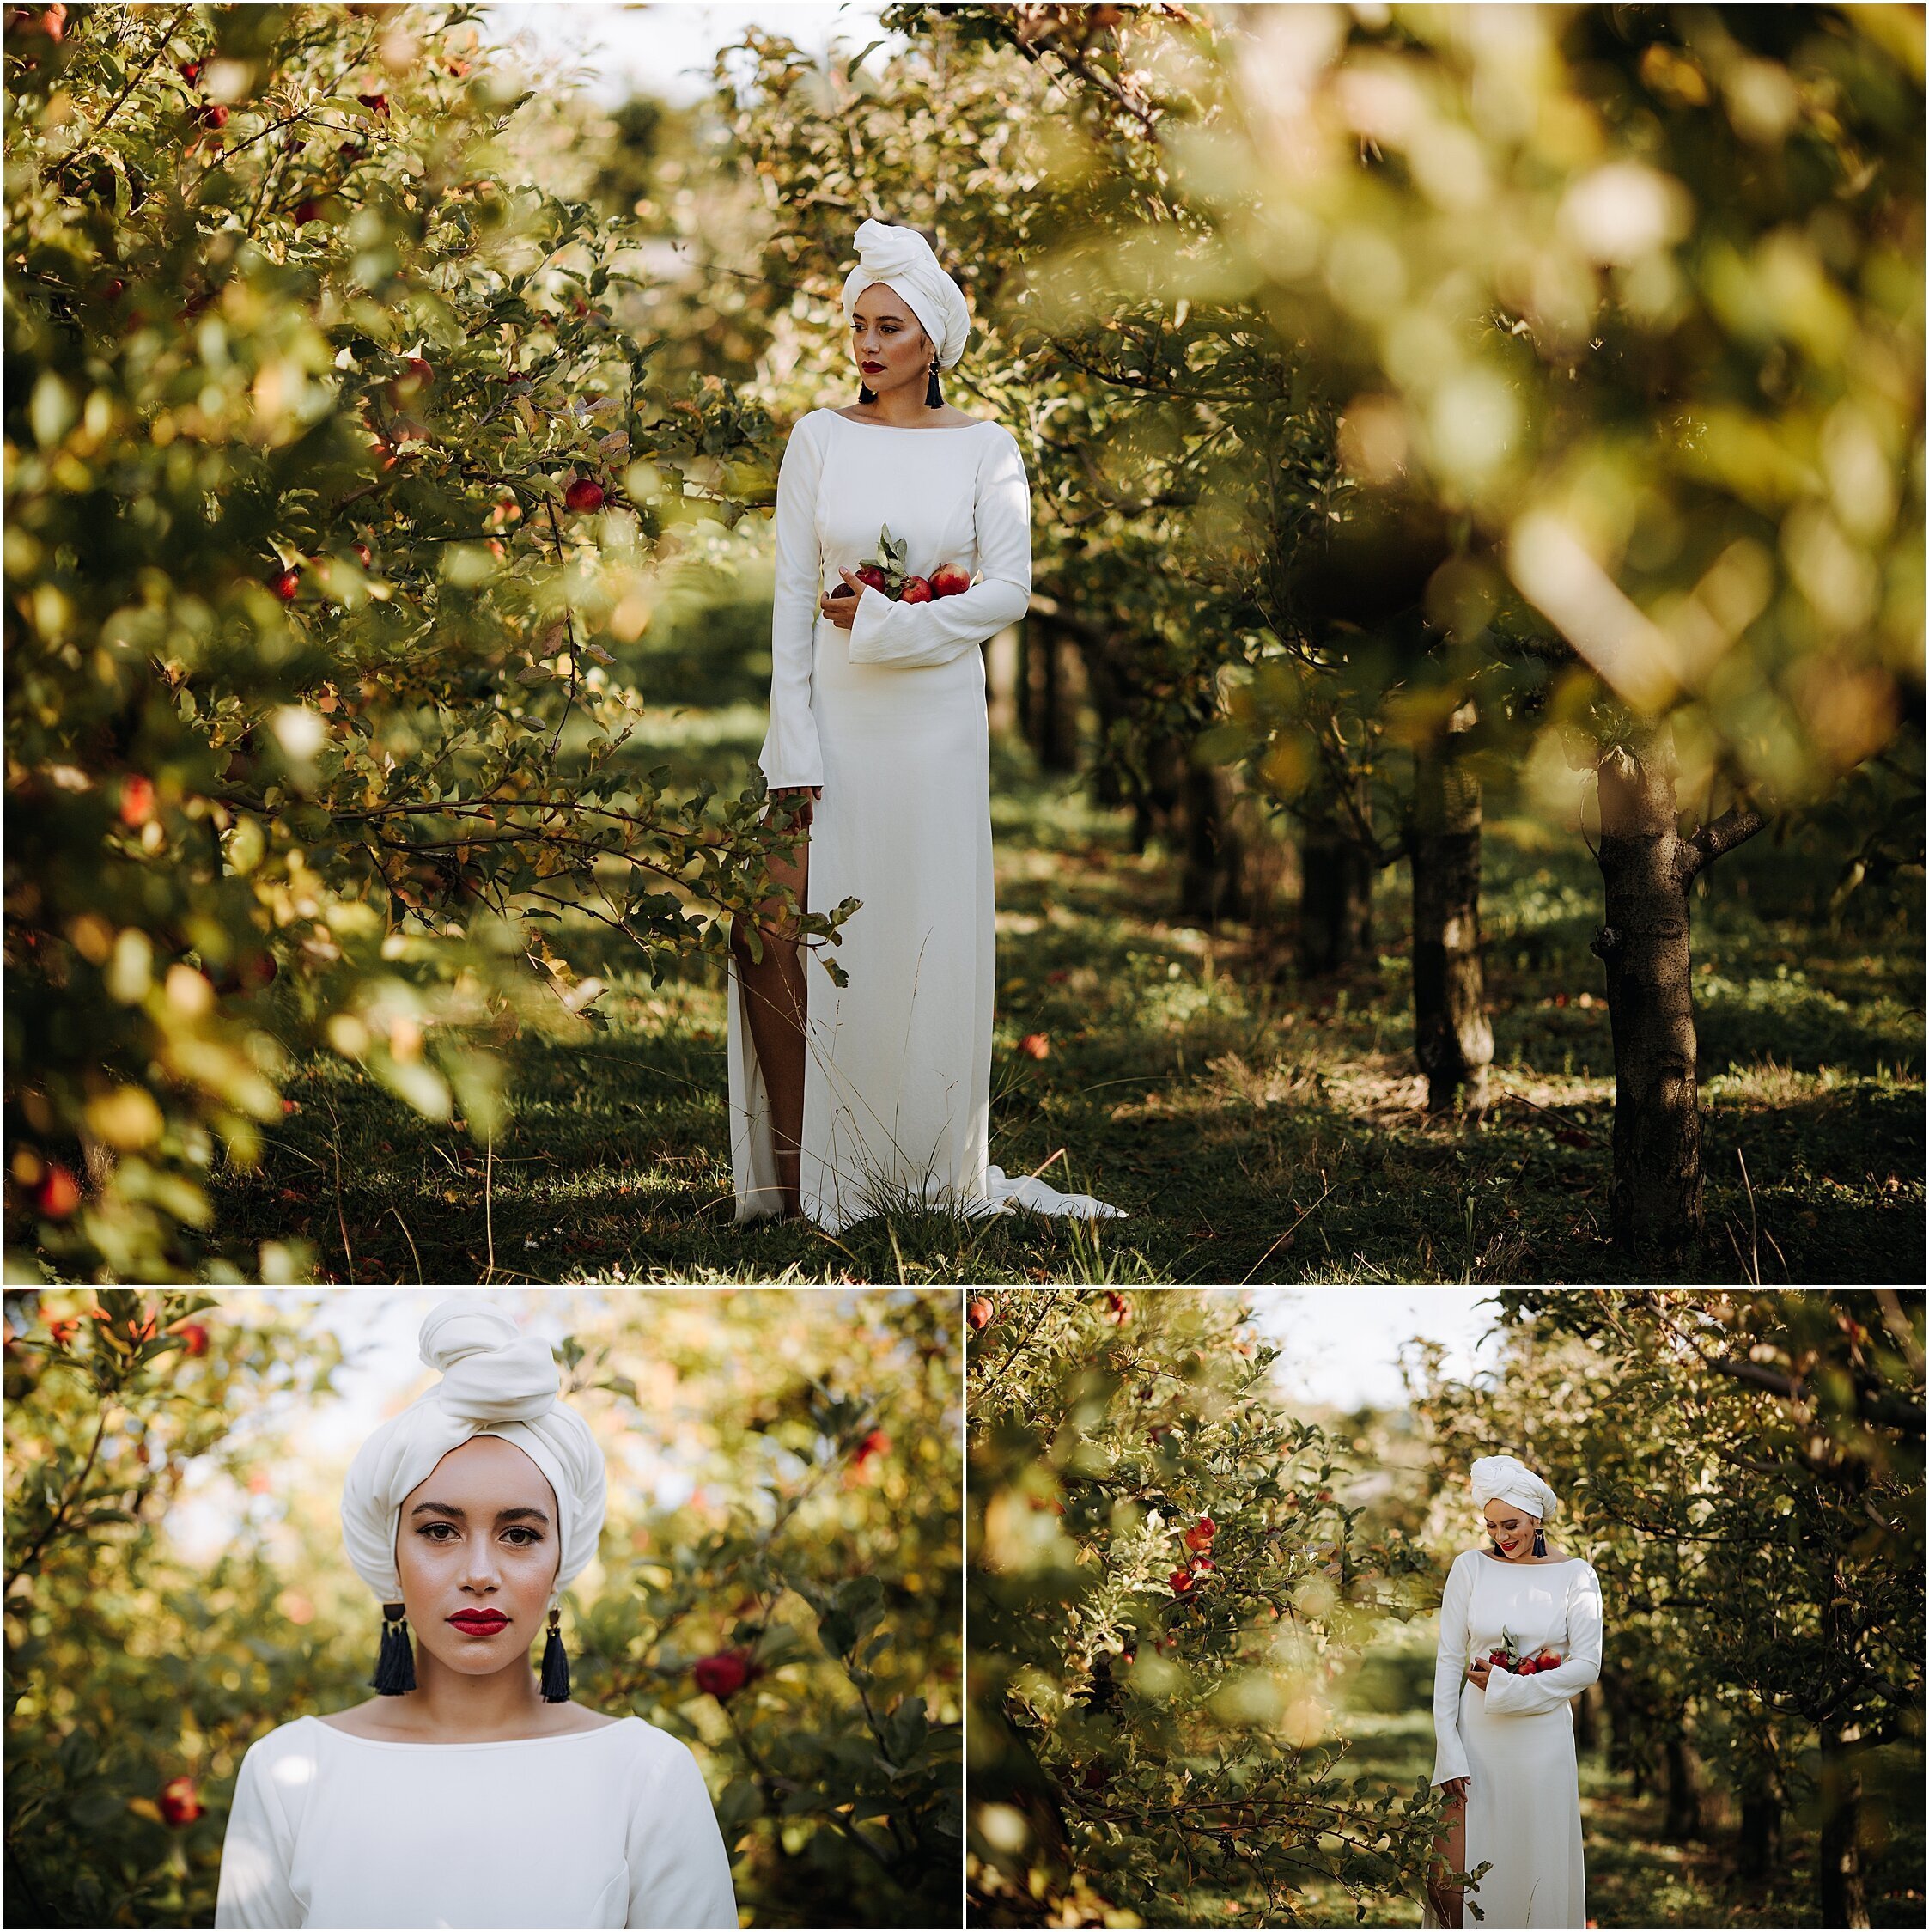 Zanda+Auckland+wedding+photographer+unique+portrait+photoshoot+ideas+autumn+winter+Windmill+apple+orchard+Coatesville+New+Zealand_6.jpeg